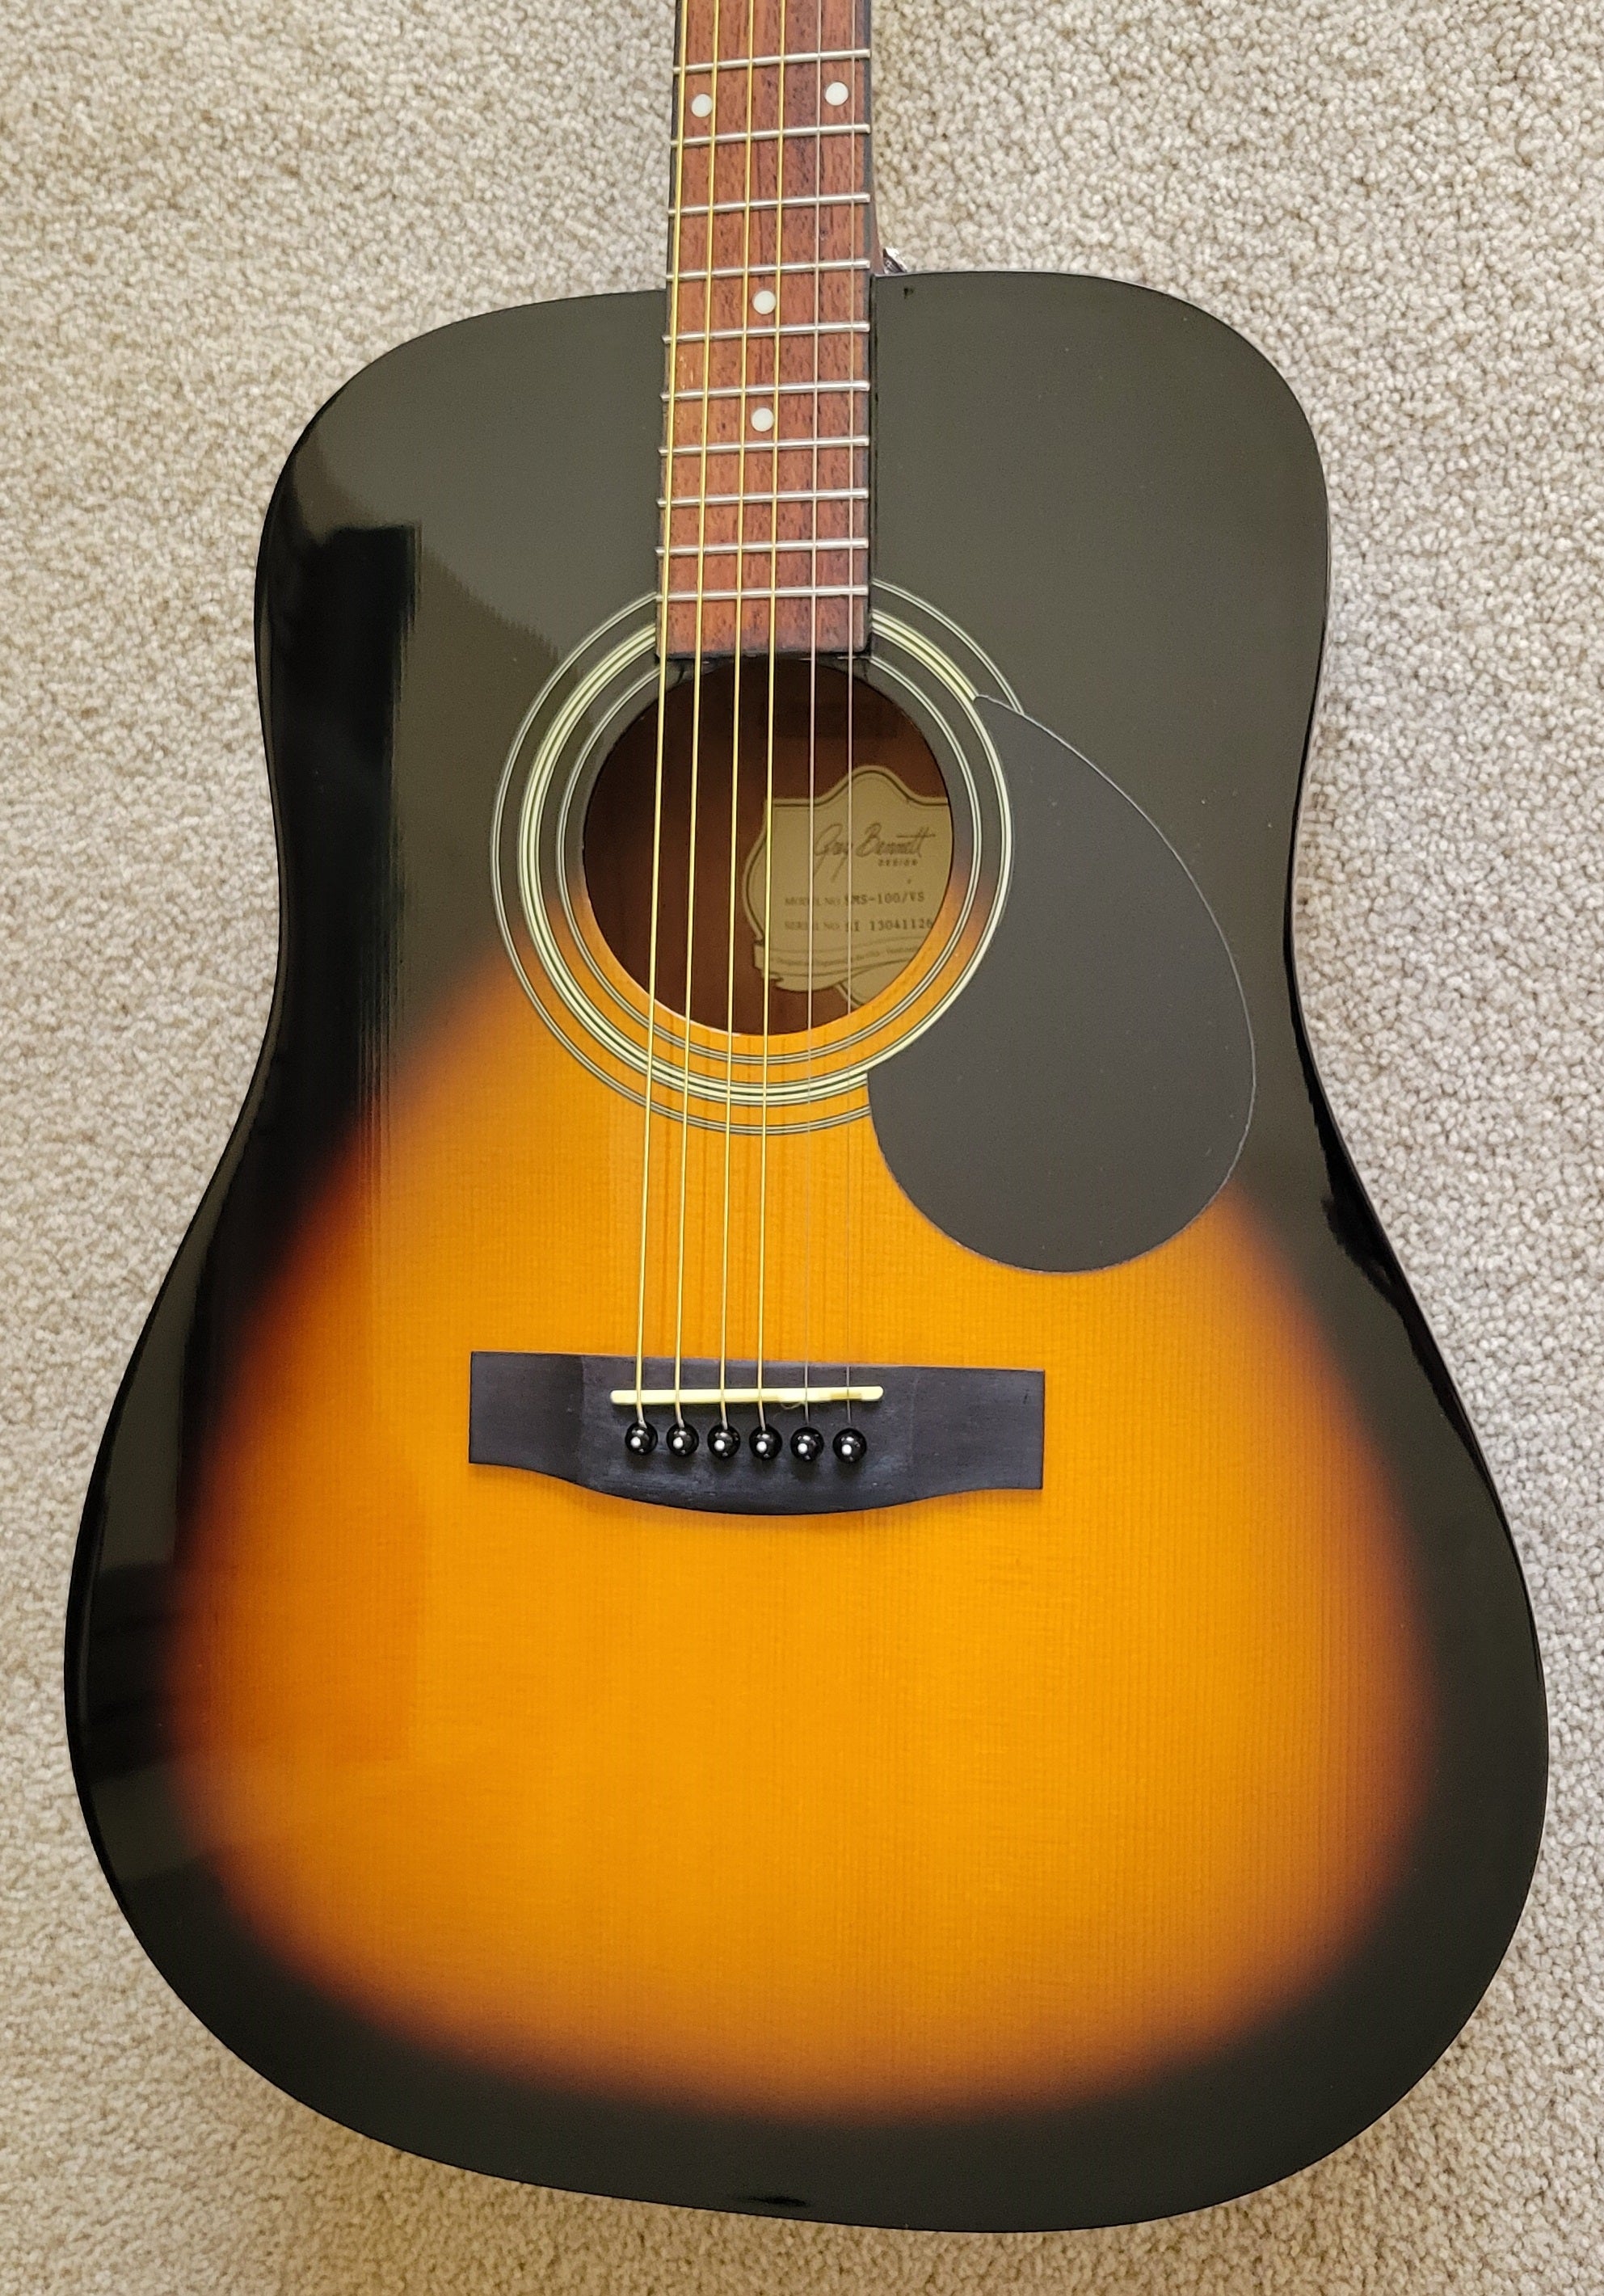 サミック グレッグベネット 左利きアコースティックギター D-1/LH 